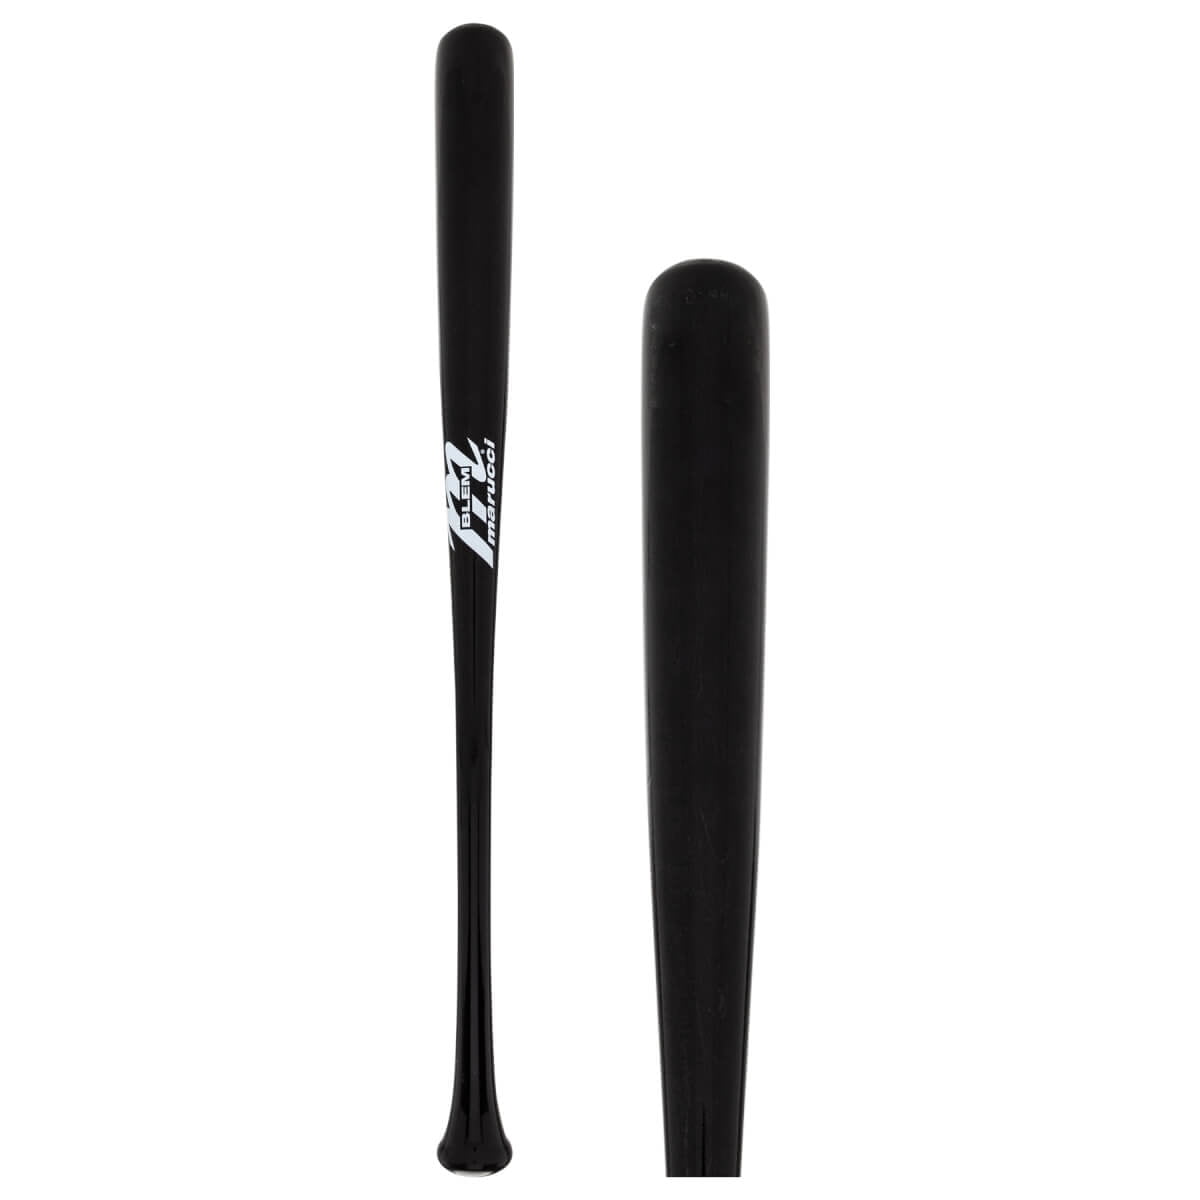 Rawlings BIG STICK Birch Wood PAI13B Baseball Bat 33 inch NEW NEVER USED 